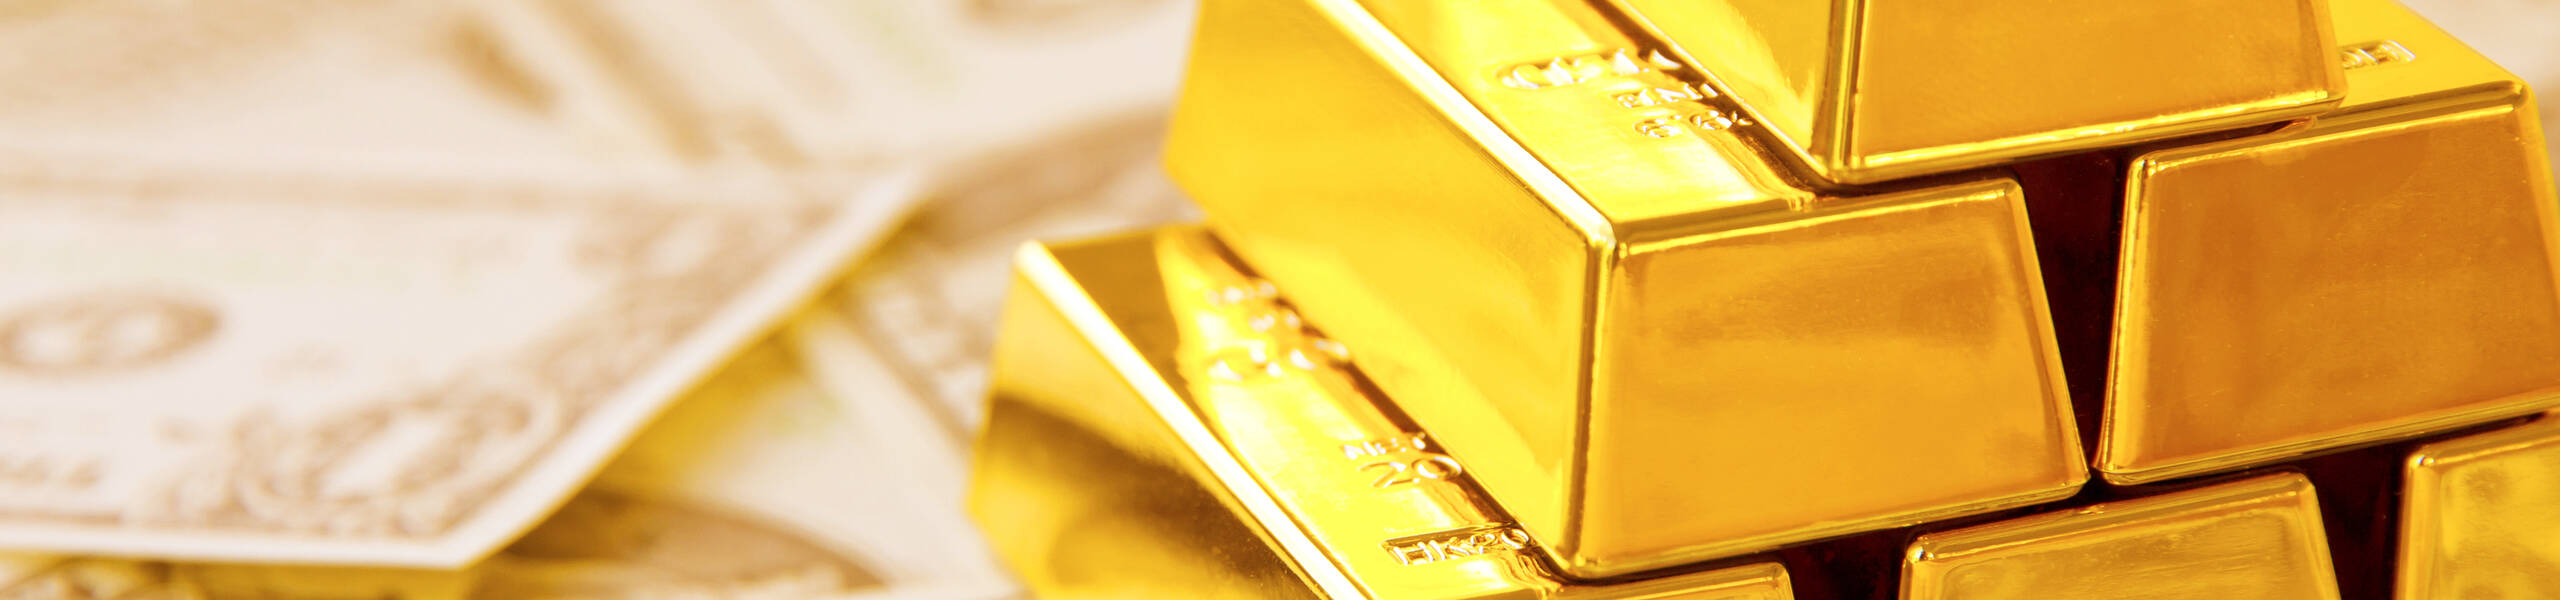 XAU/USD: Ouro bate 1841,56 e faz novos tops de vários anos